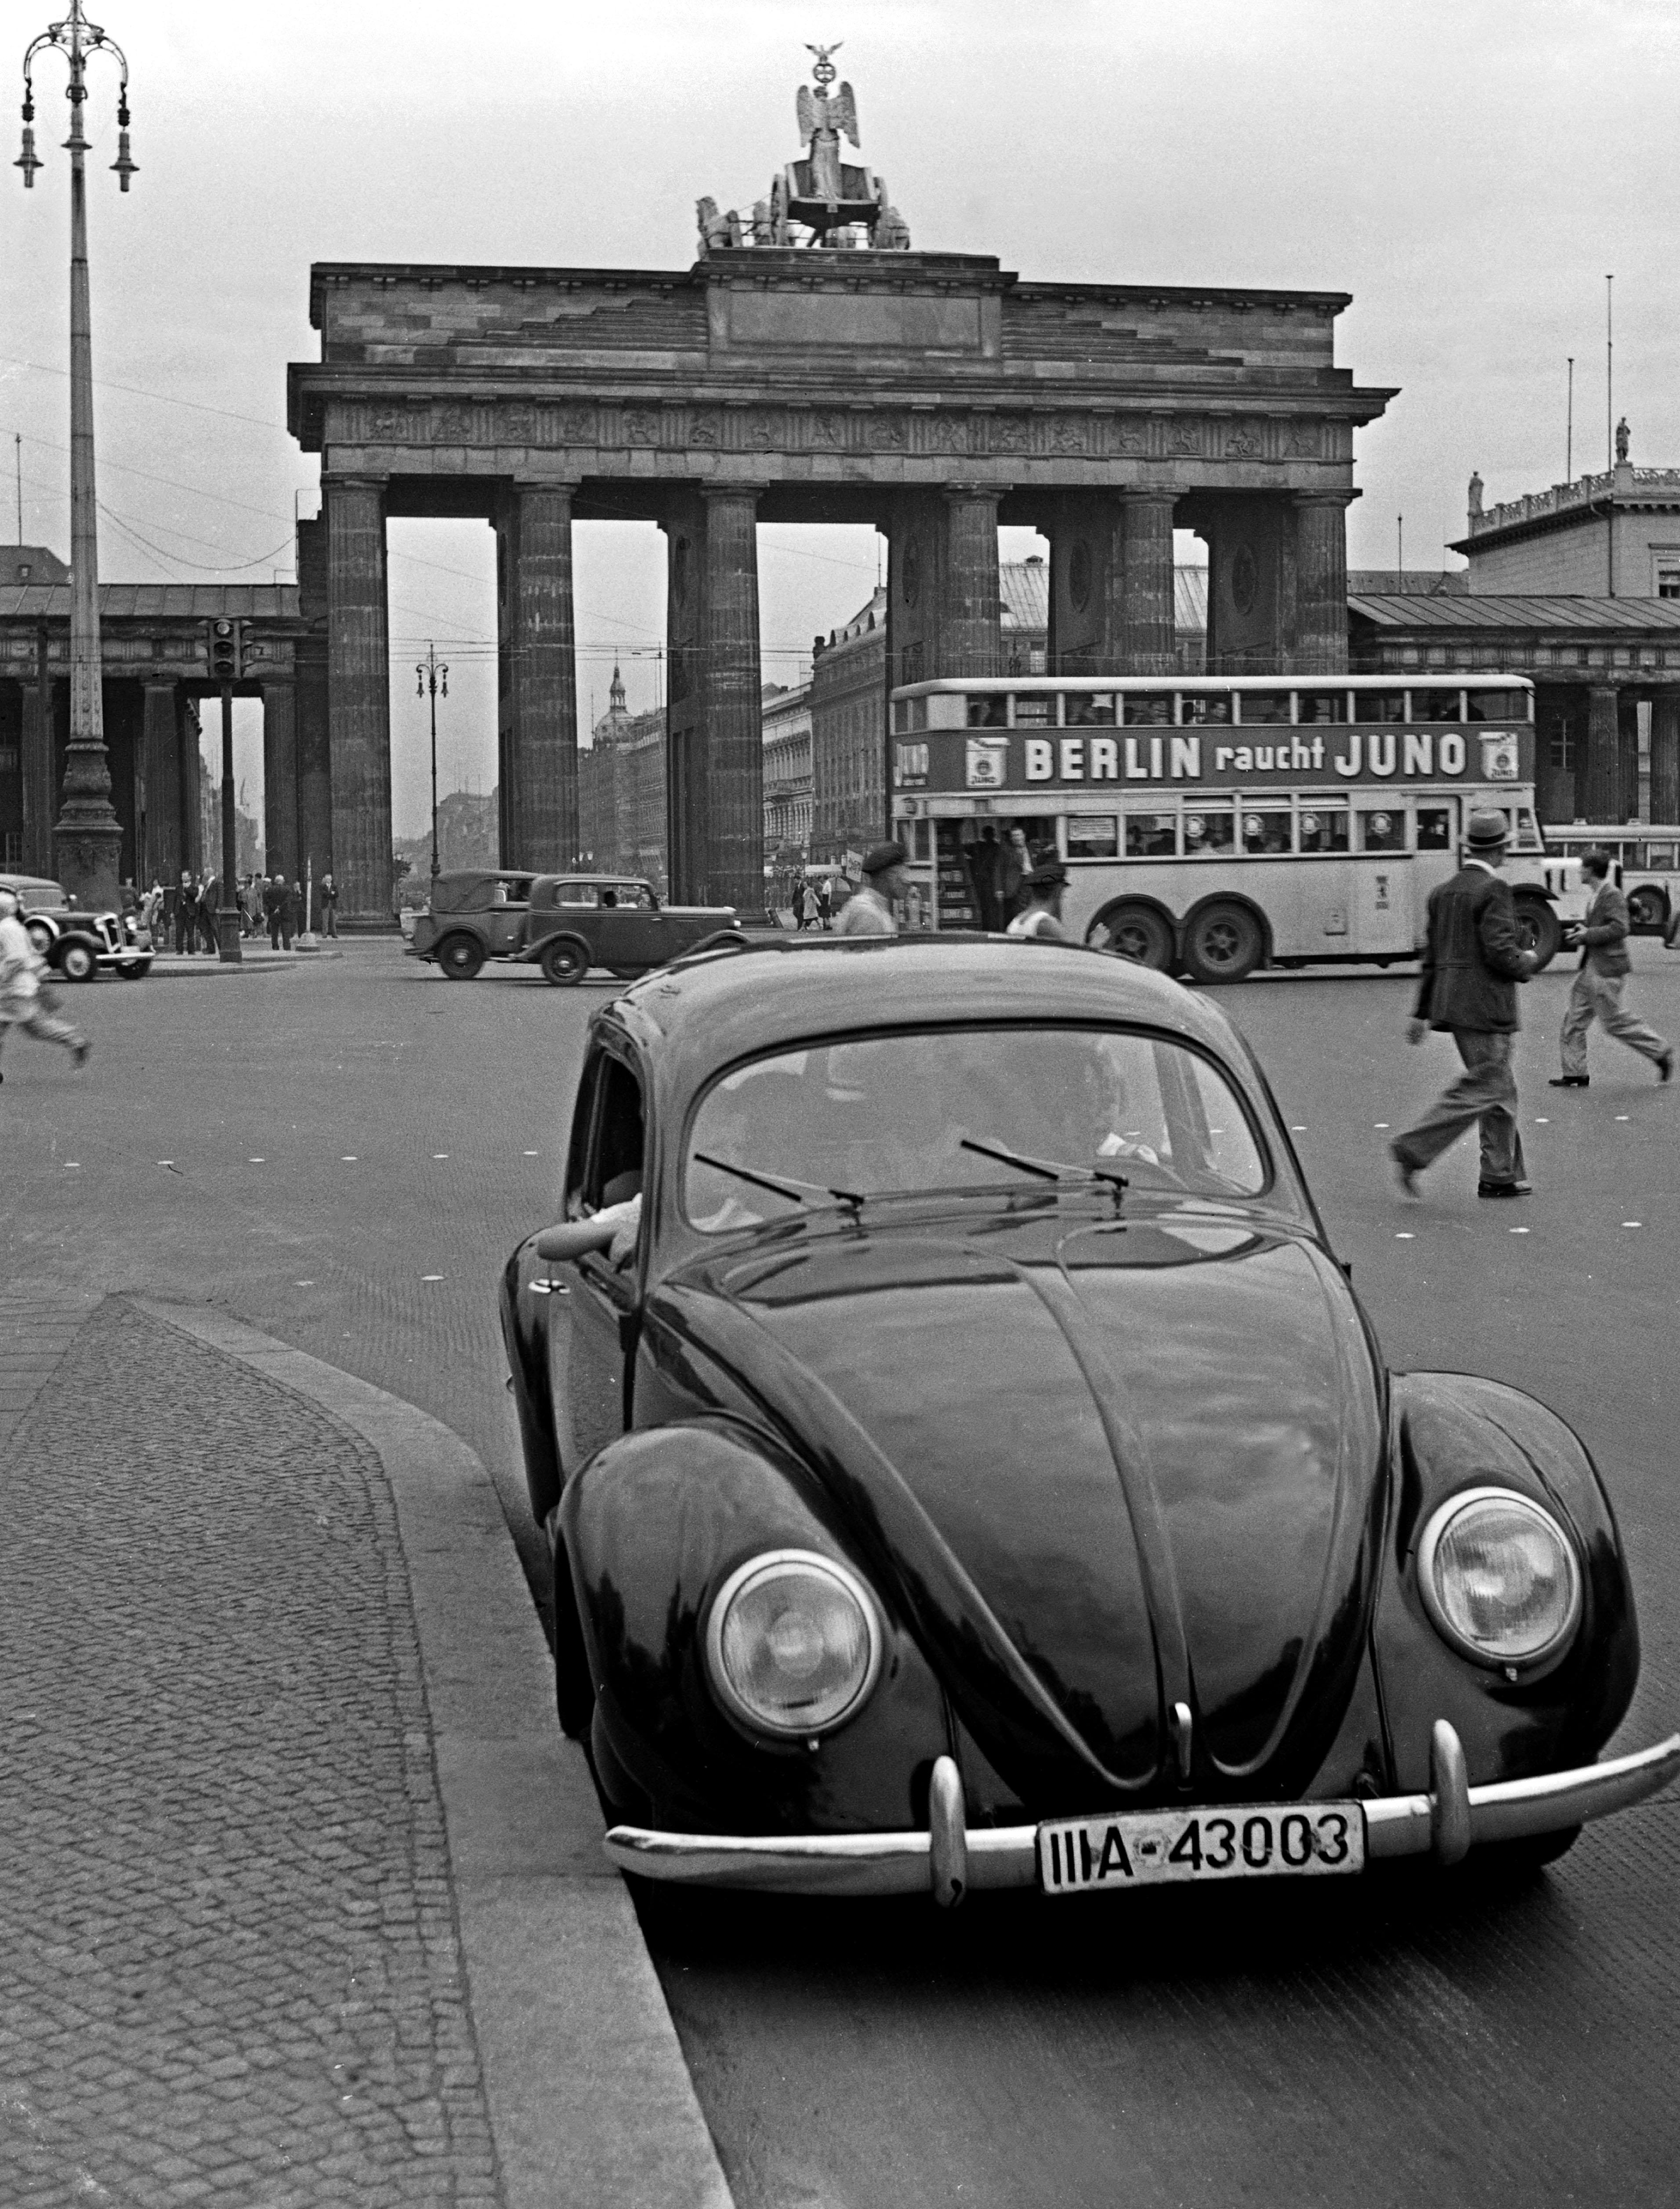 Black and White Photograph Karl Heinrich Lämmel - Gate de Brandenburg avec le scarabée de Volkswagen, Allemagne 1939 Imprimé ultérieurement 